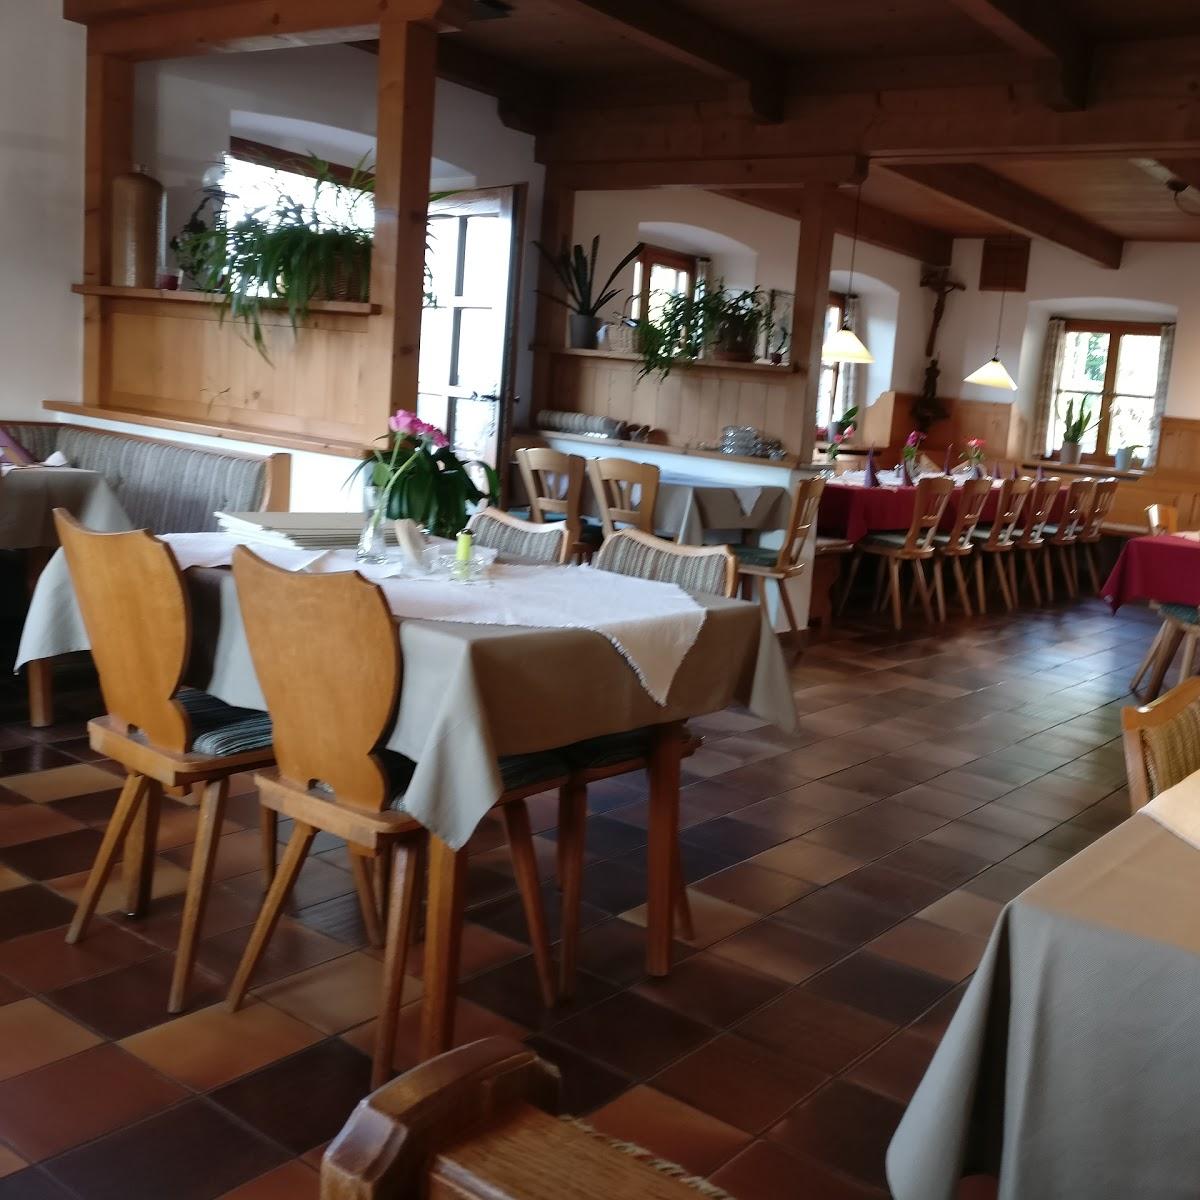 Restaurant "Berggasthaus Weingarten" in Ruhpolding